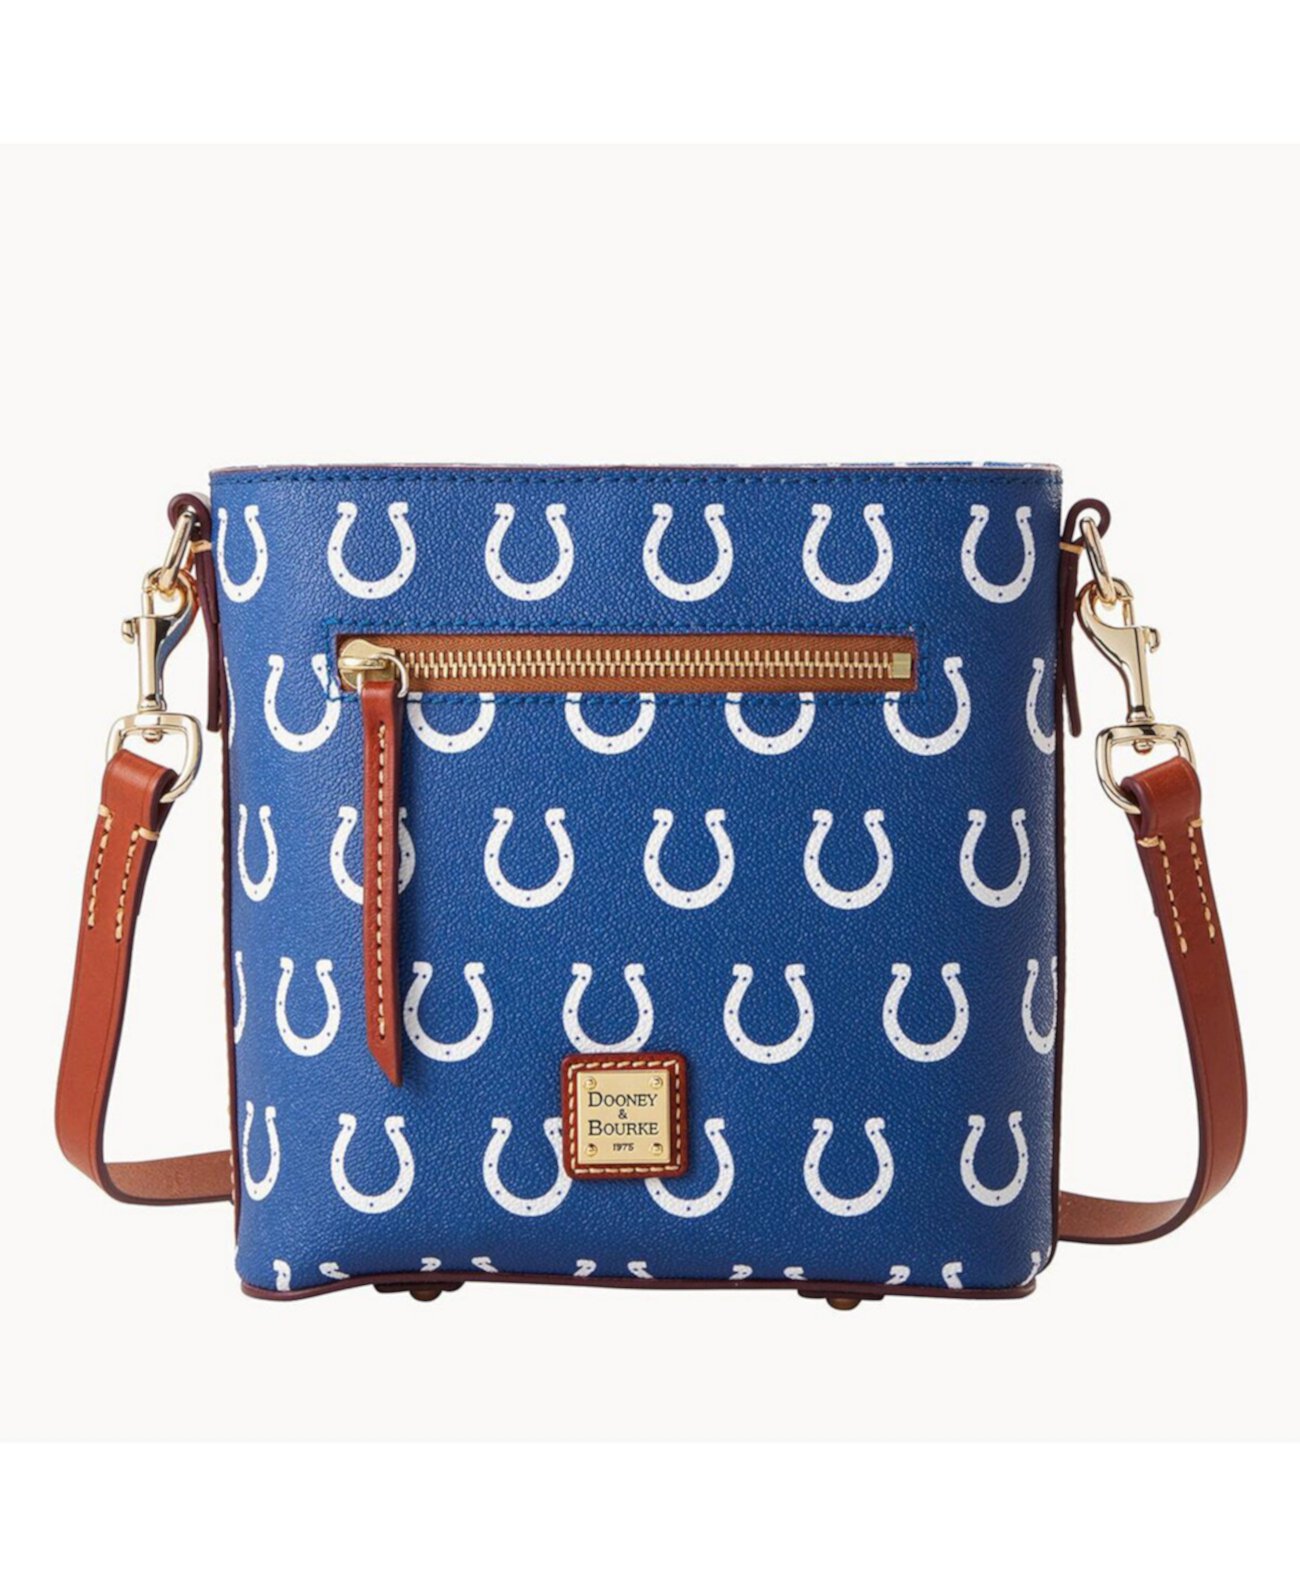 Женская маленькая сумочка через плечо на молнии Indianapolis Colts Signature Dooney & Bourke